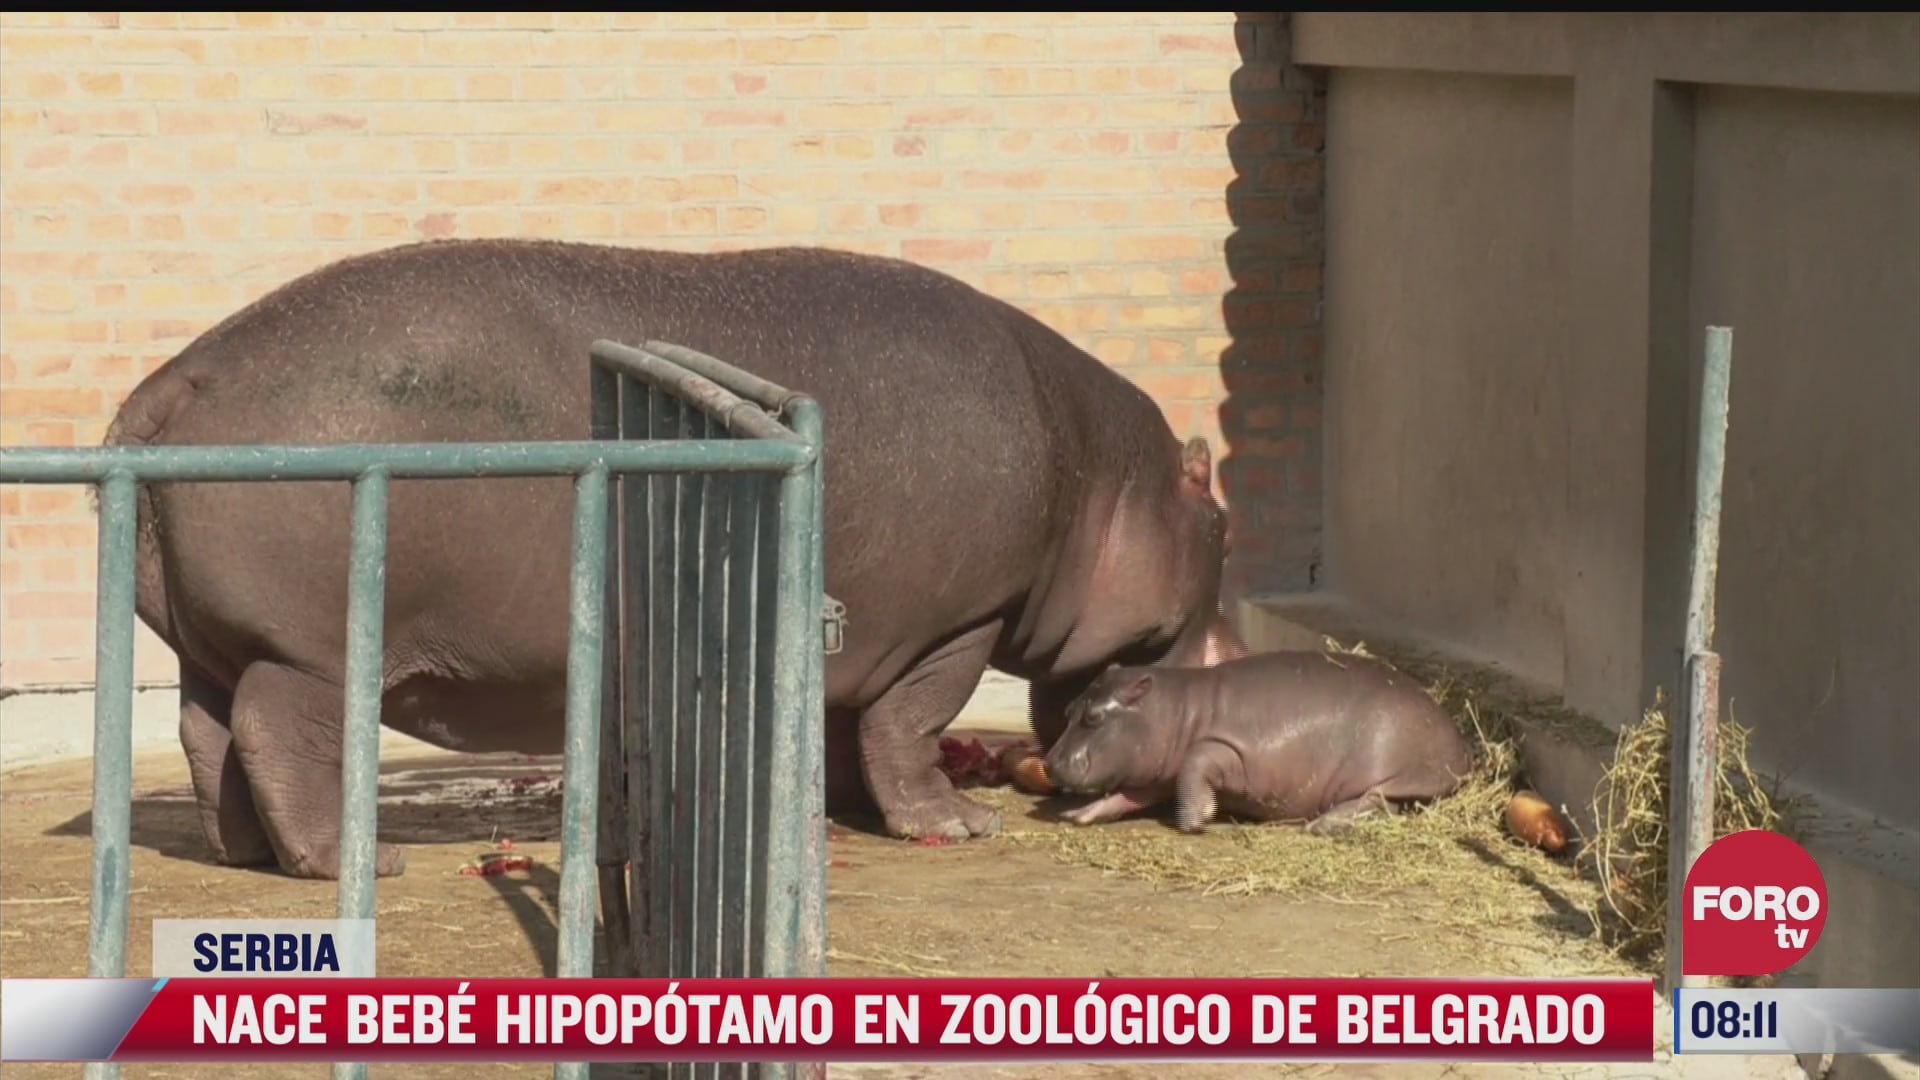 nace bebe hipopotamo en zoologico de belgrado serbia